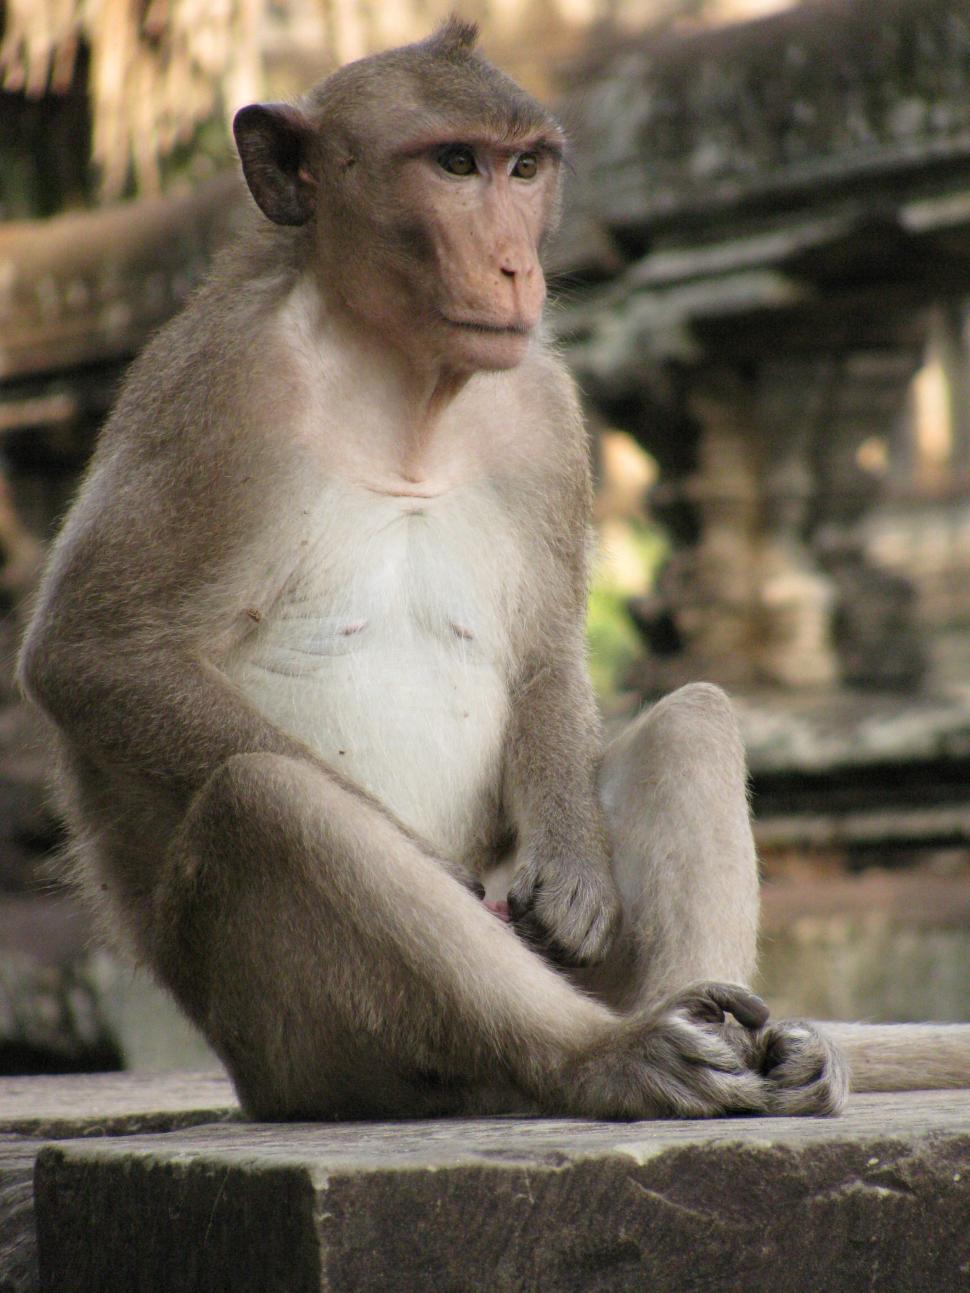 Free Image of monkey 